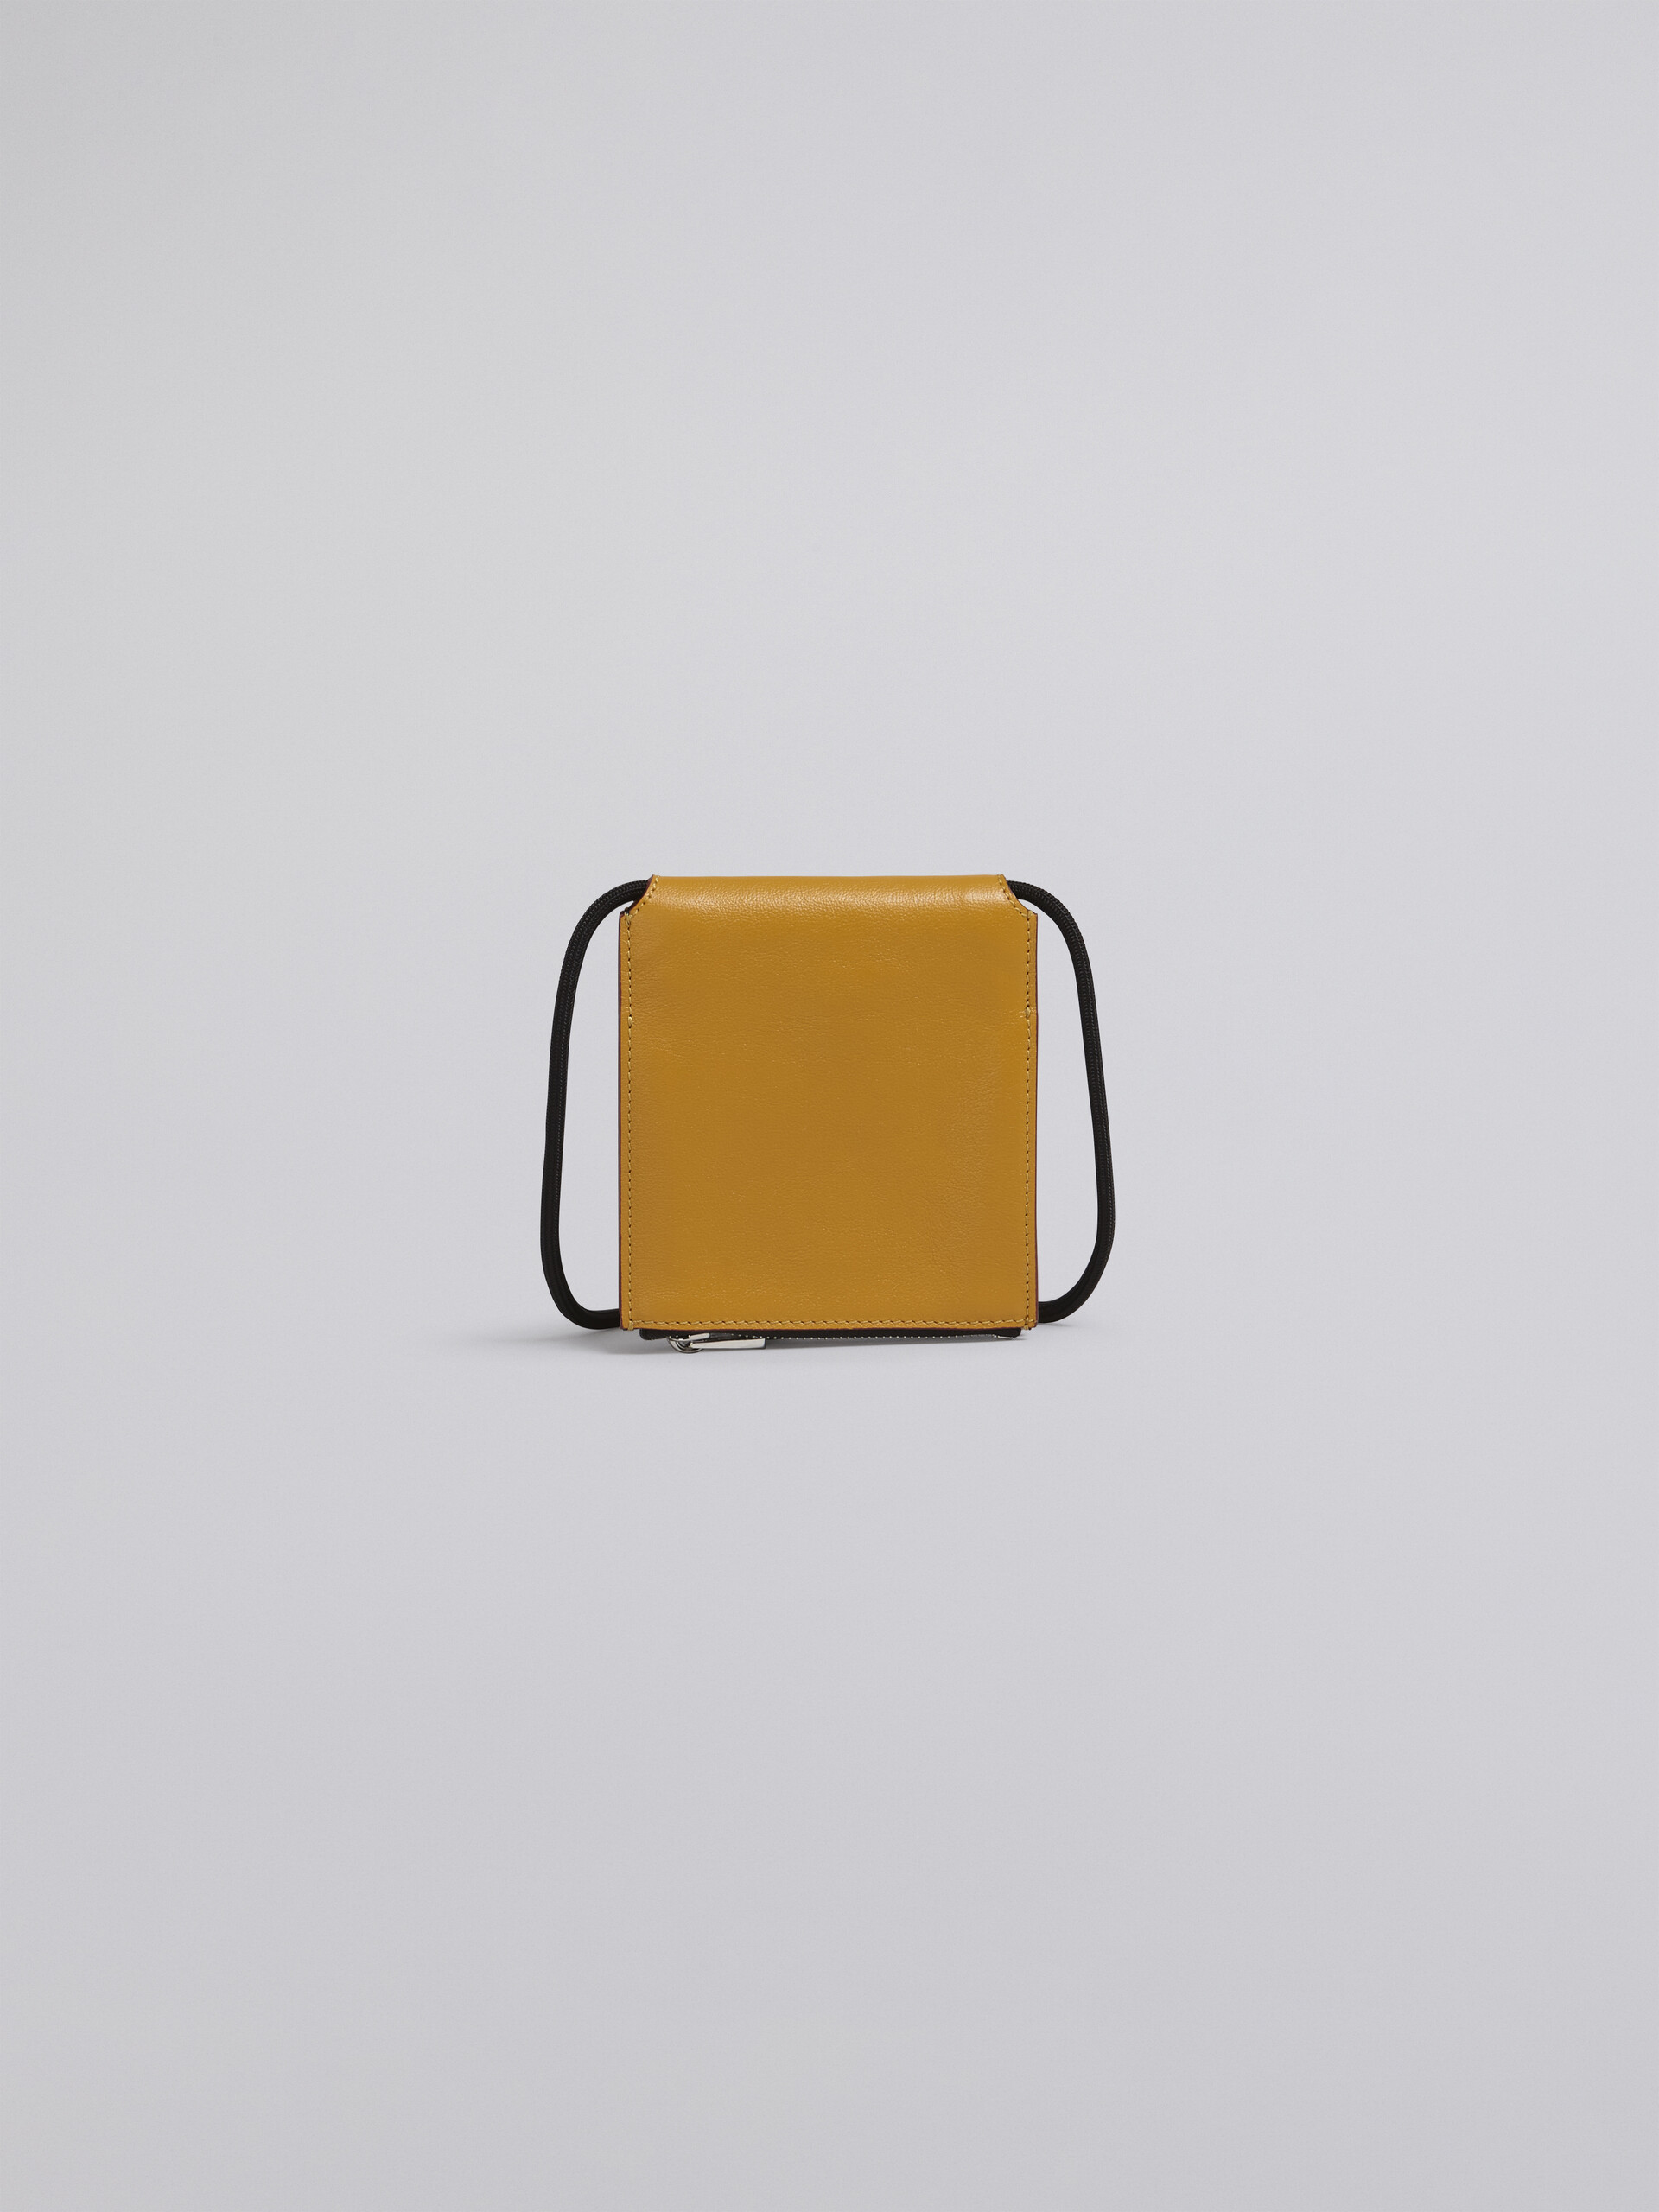 Portafoglio MUSEO bi-fold in vitello bicolore giallo e nero - Portafogli - Image 3